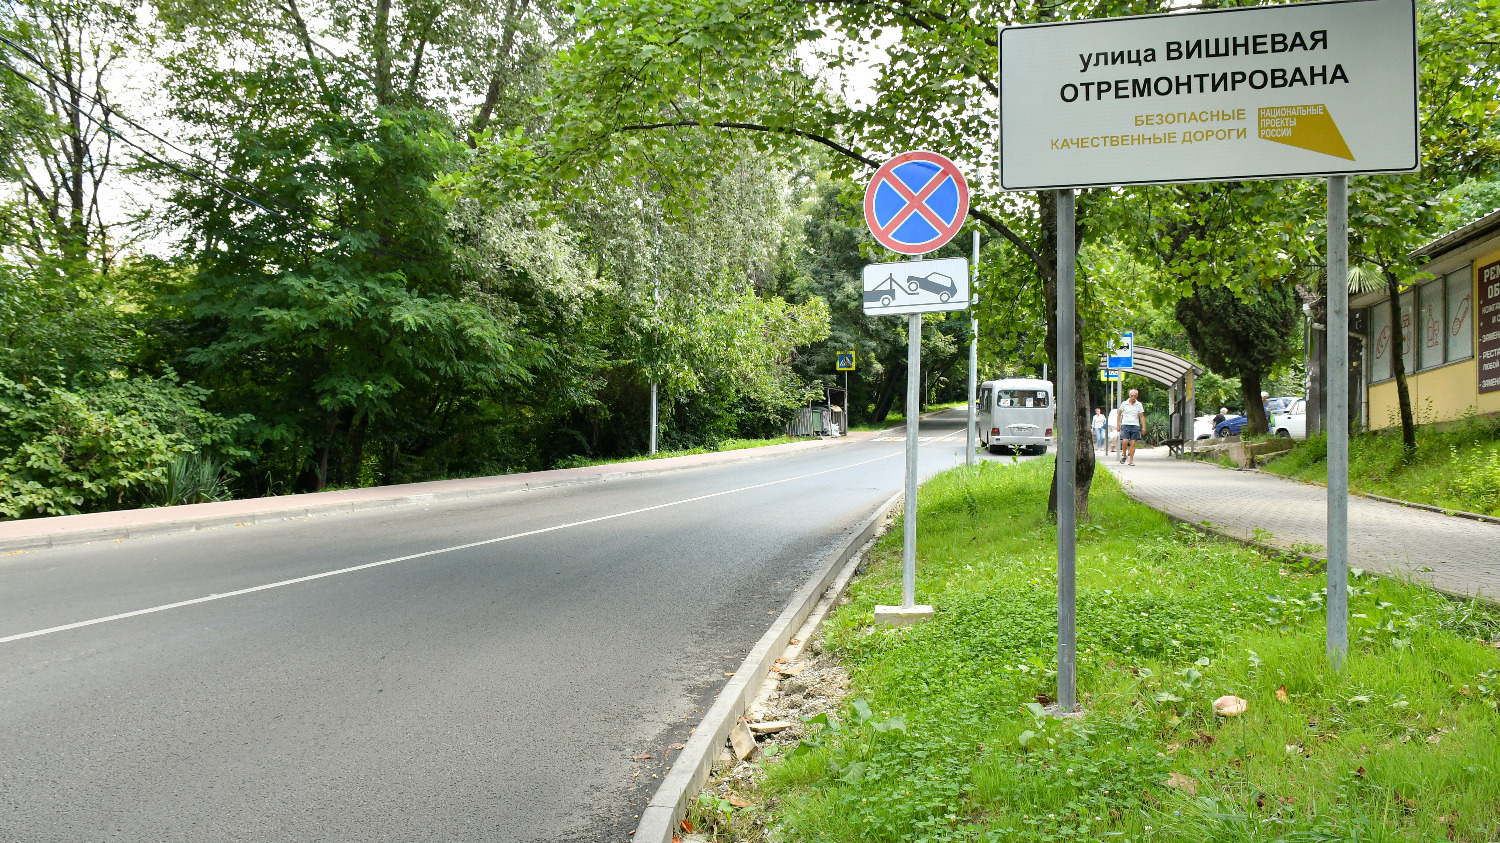 Под контролем мэра Алексея Копайгородского за пять лет отремонтировано 326 участков улиц  в рамках нацпроекта «Безопасные качественные дороги»